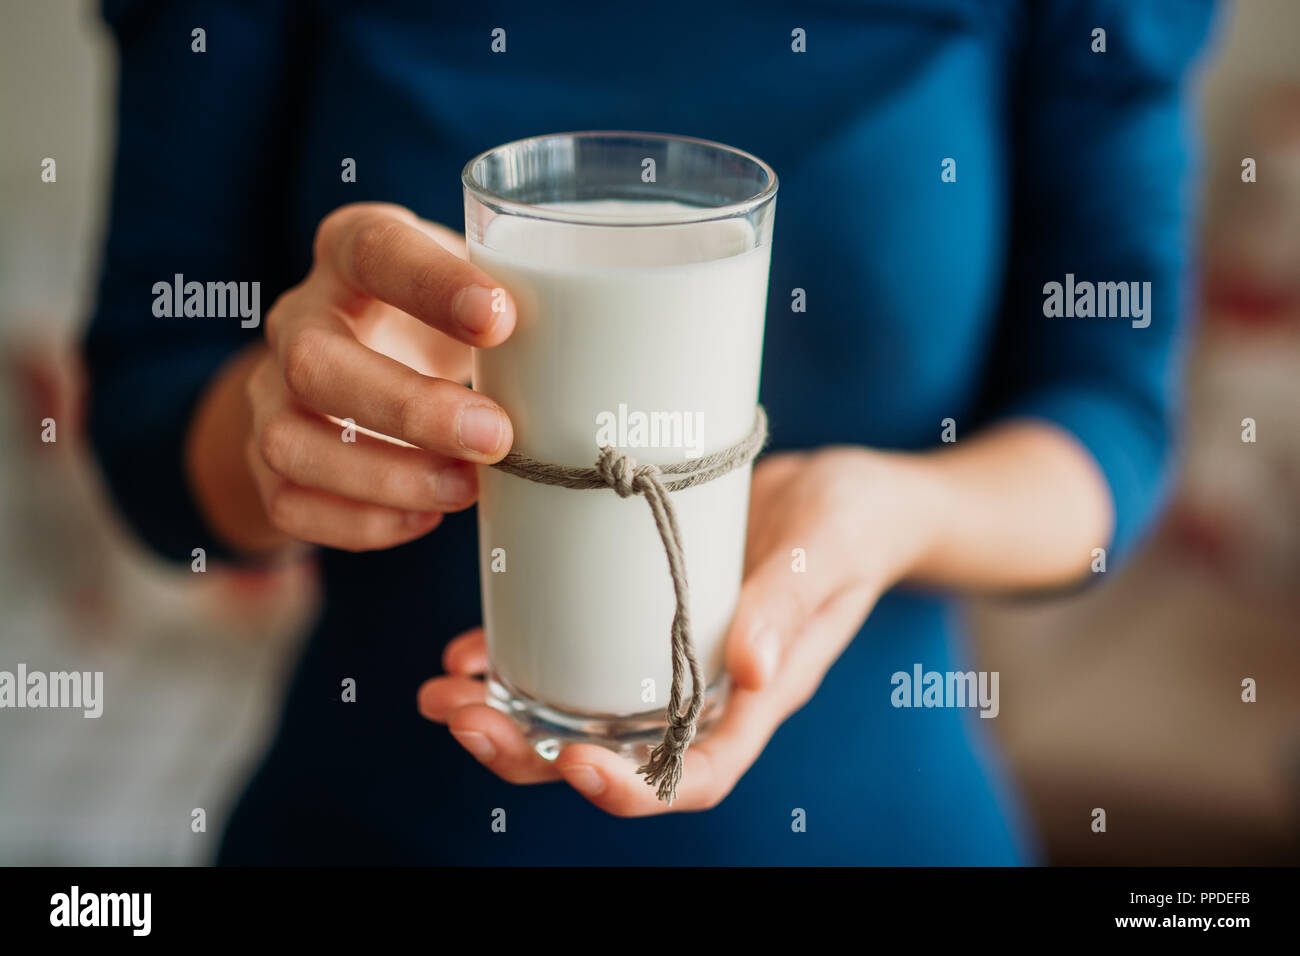 Mujer joven manos sosteniendo un vaso de leche. Foto de stock